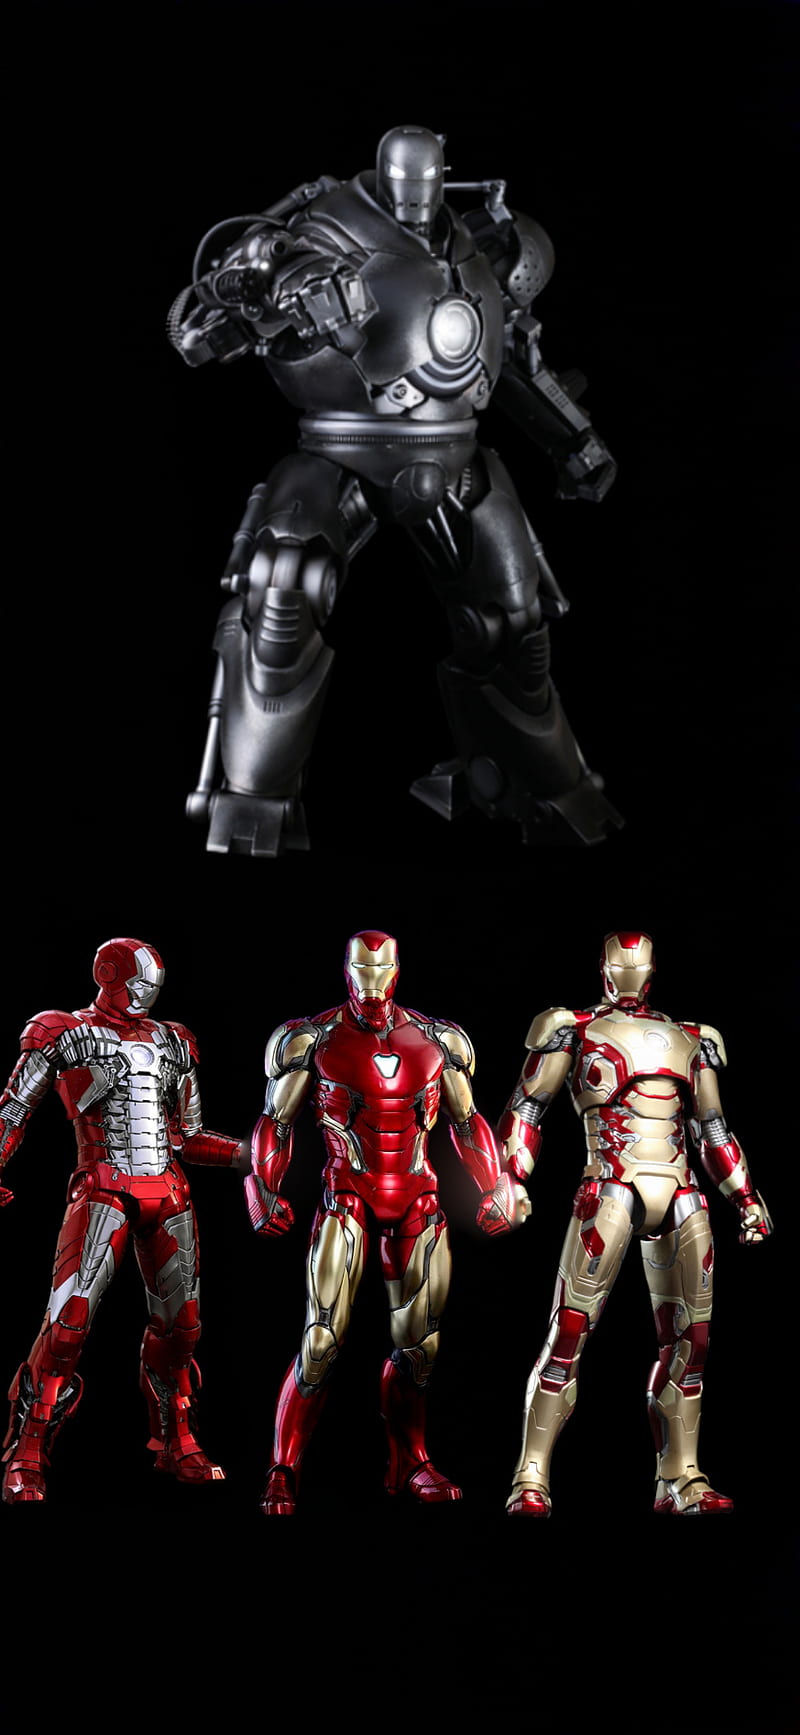 Iron Man Avengers Iron Man Mark 42 Iron Man Mark 5 Iron Man Mark 85 Iron Monger Hd Mobile Wallpaper Peakpx